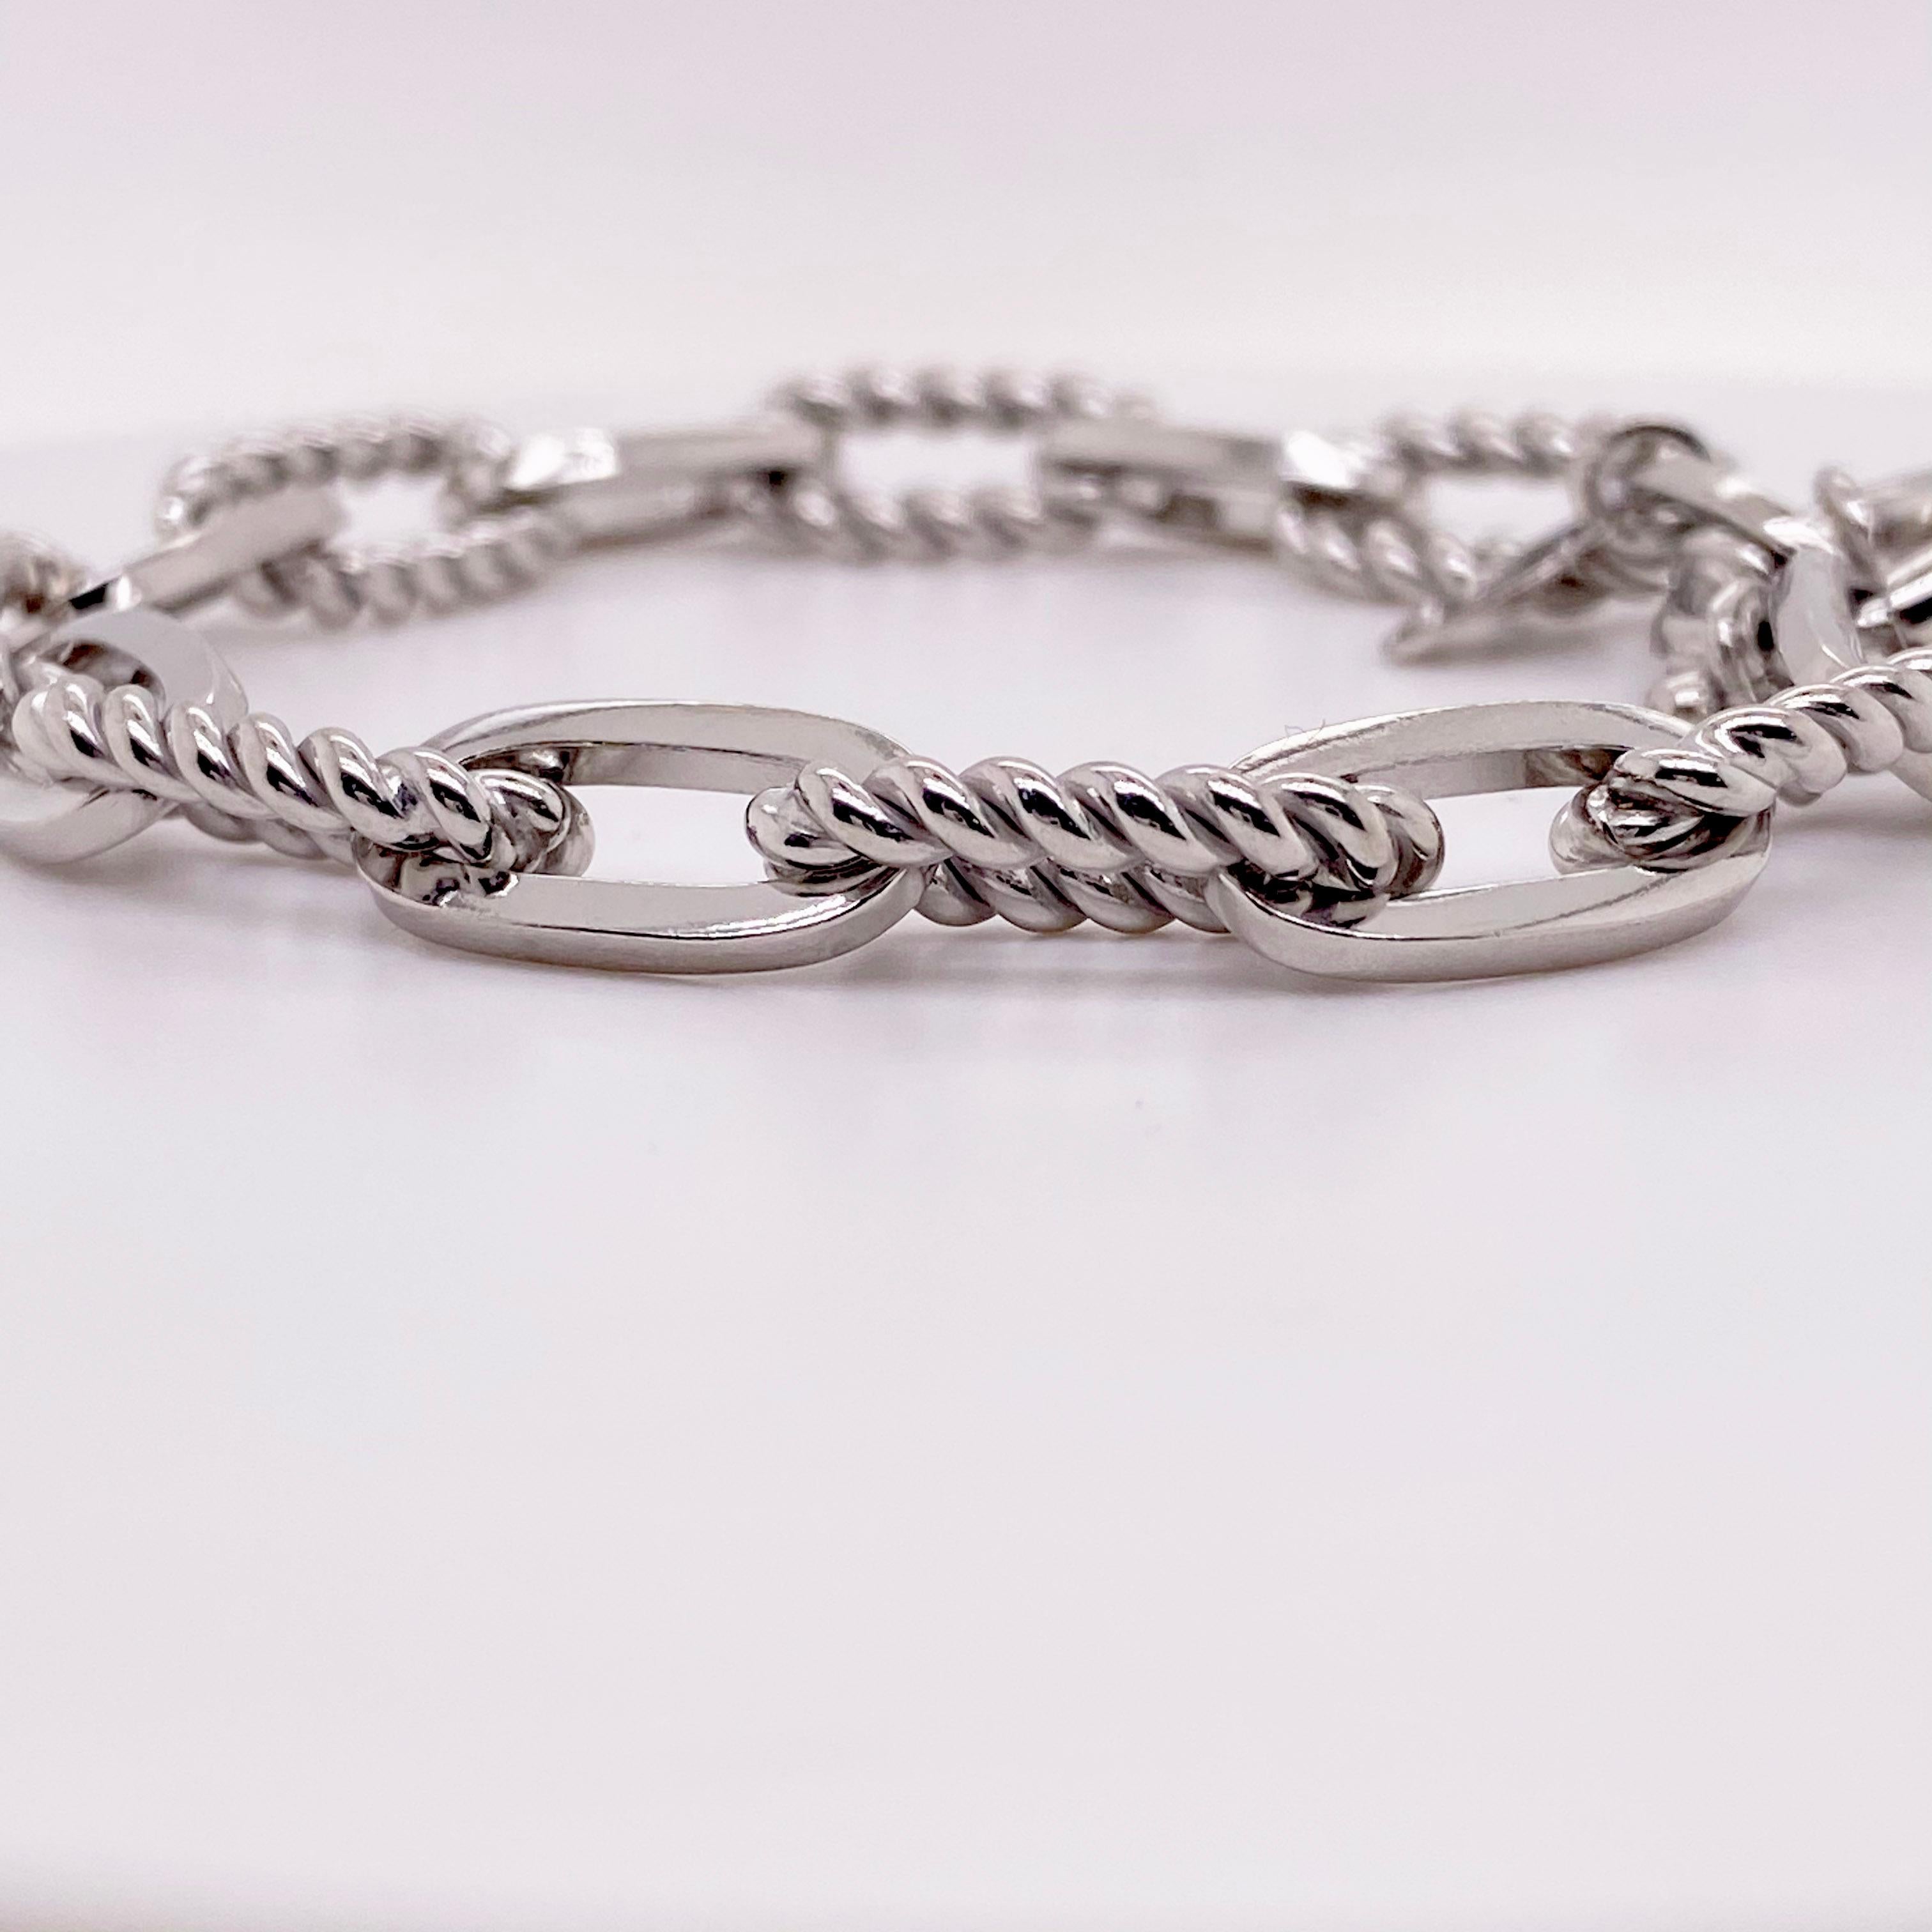 Vous trouverez ci-dessous les détails de ce magnifique bracelet :
Qualité du métal : Argent Sterling 
Longueur : 7,5 in 
Largeur : 7,8 mm 
Fermoir : anneau à ressort large
Poids total en grammes : 21,8 g 